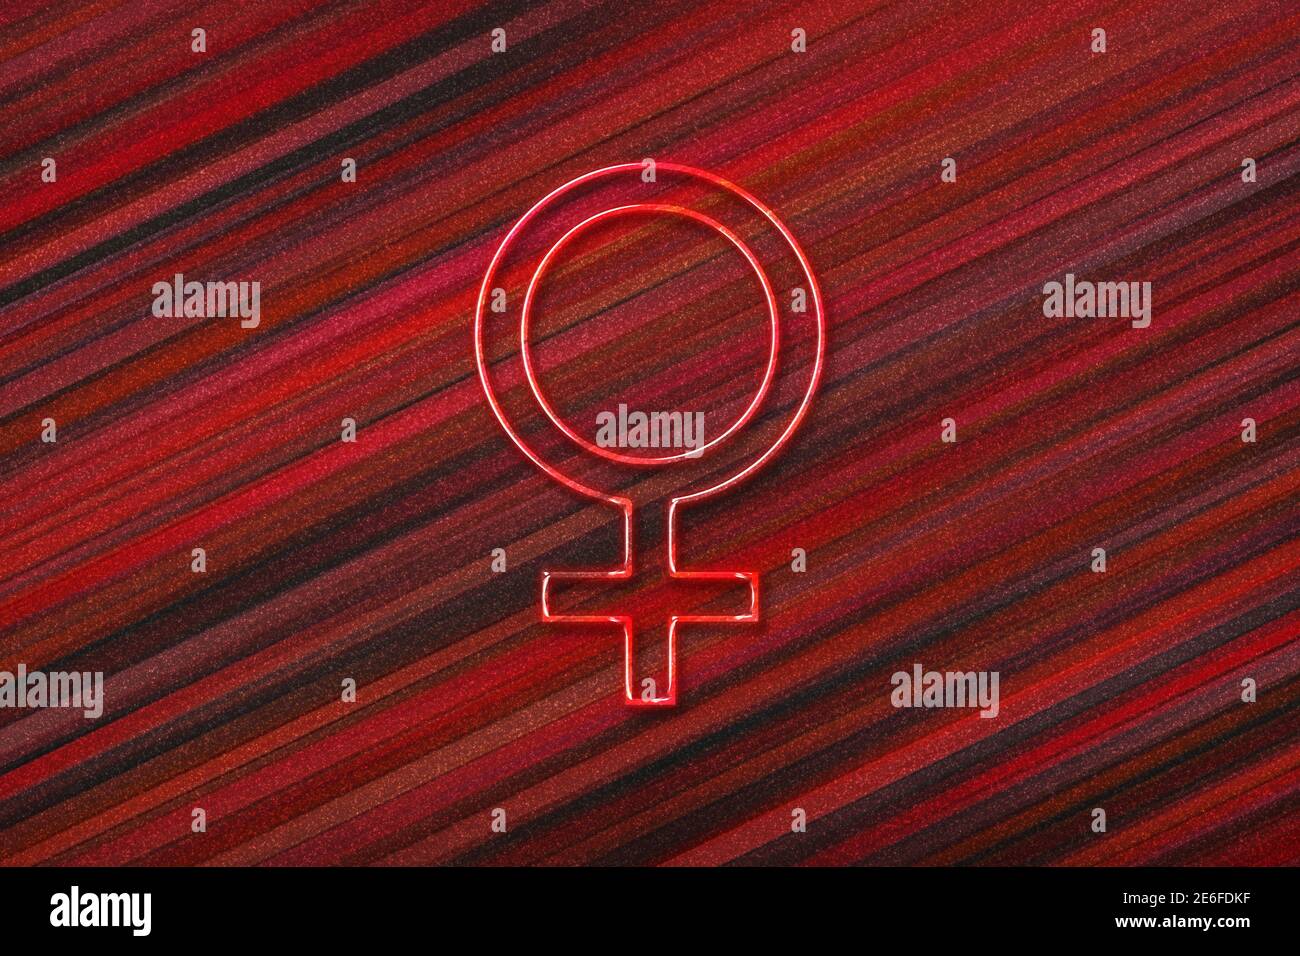 Signo de Venus, símbolo de planeta Venus, fondo rojo Foto de stock